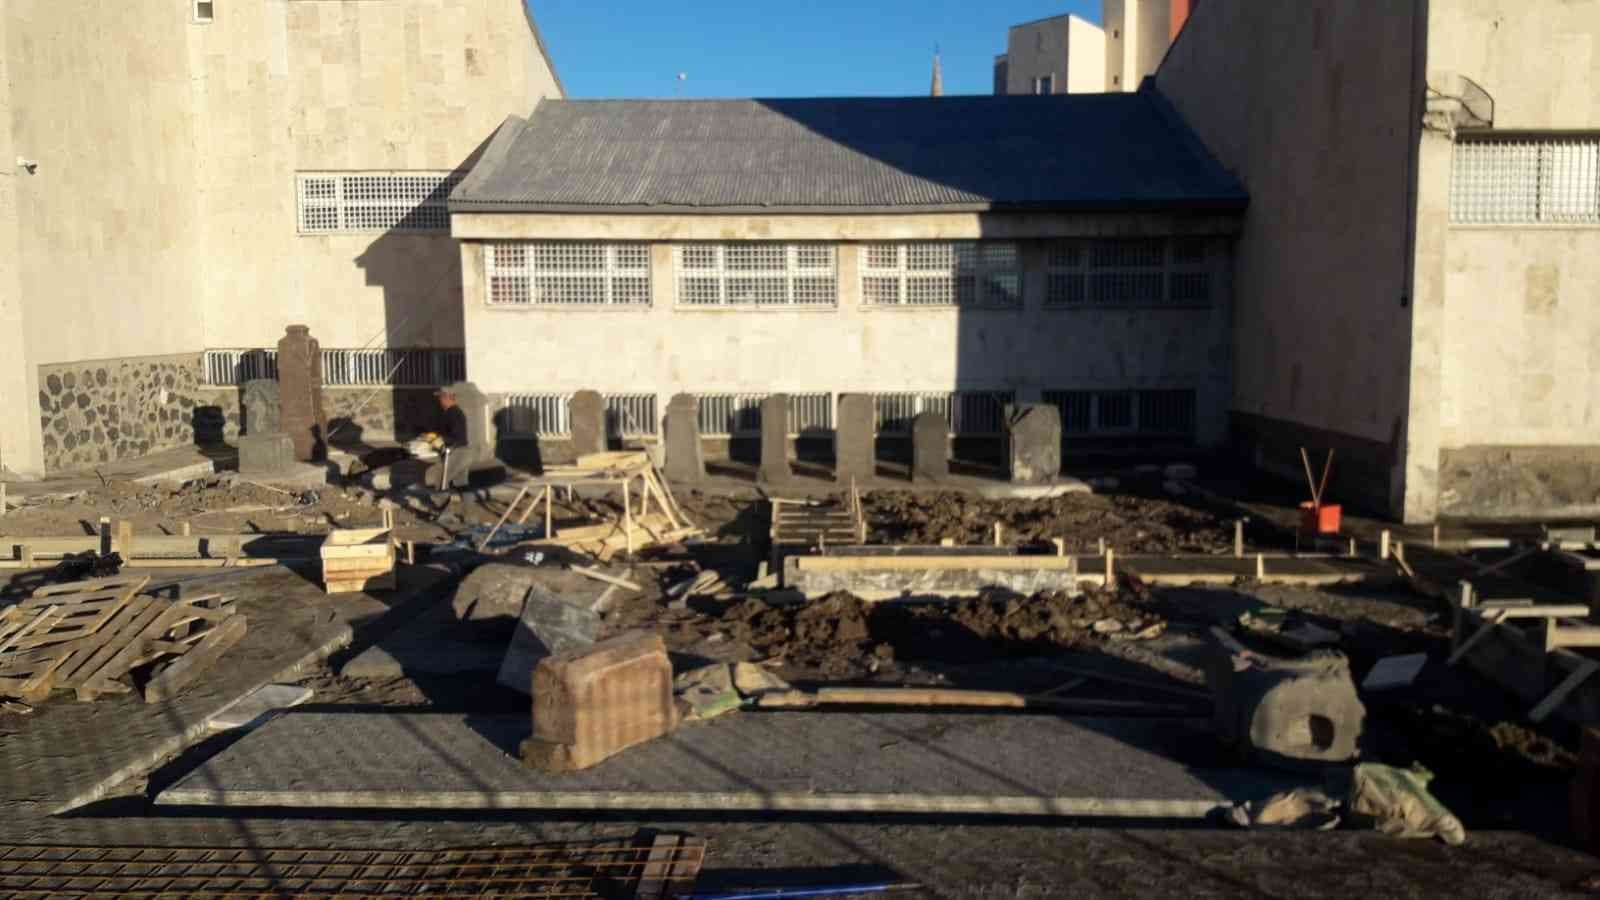 Kars’ta müze onarıma alındı #kars